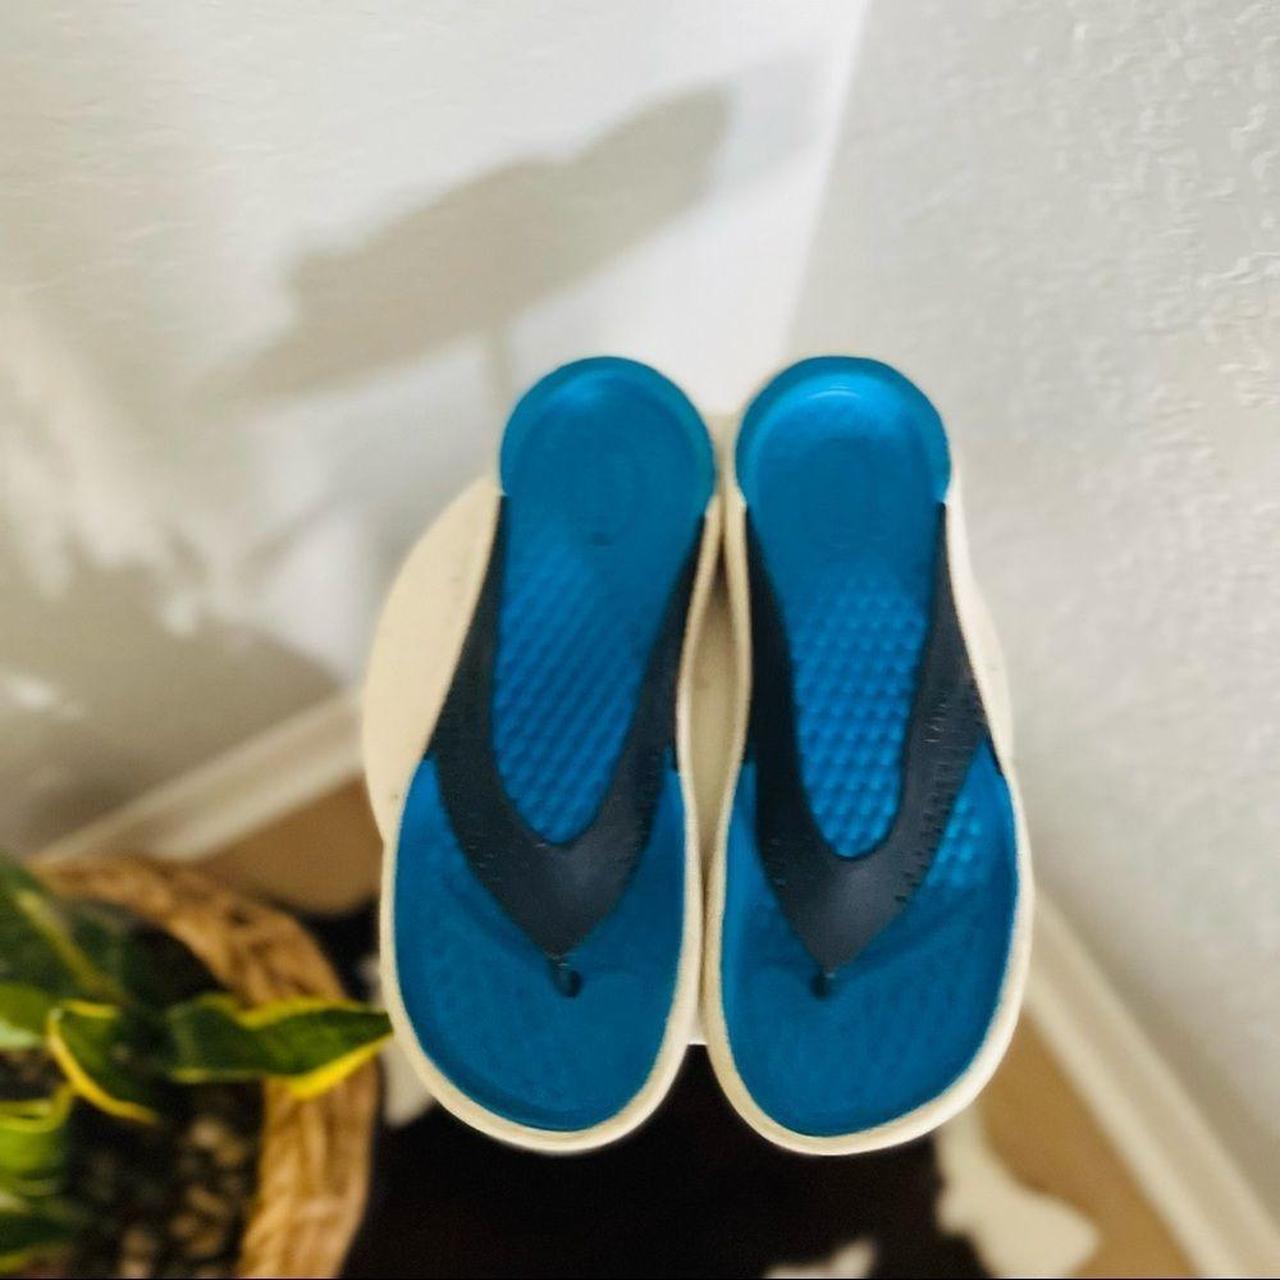 Product Image 2 - Crocs Men’s Flip Flops
Size: 9
Color: